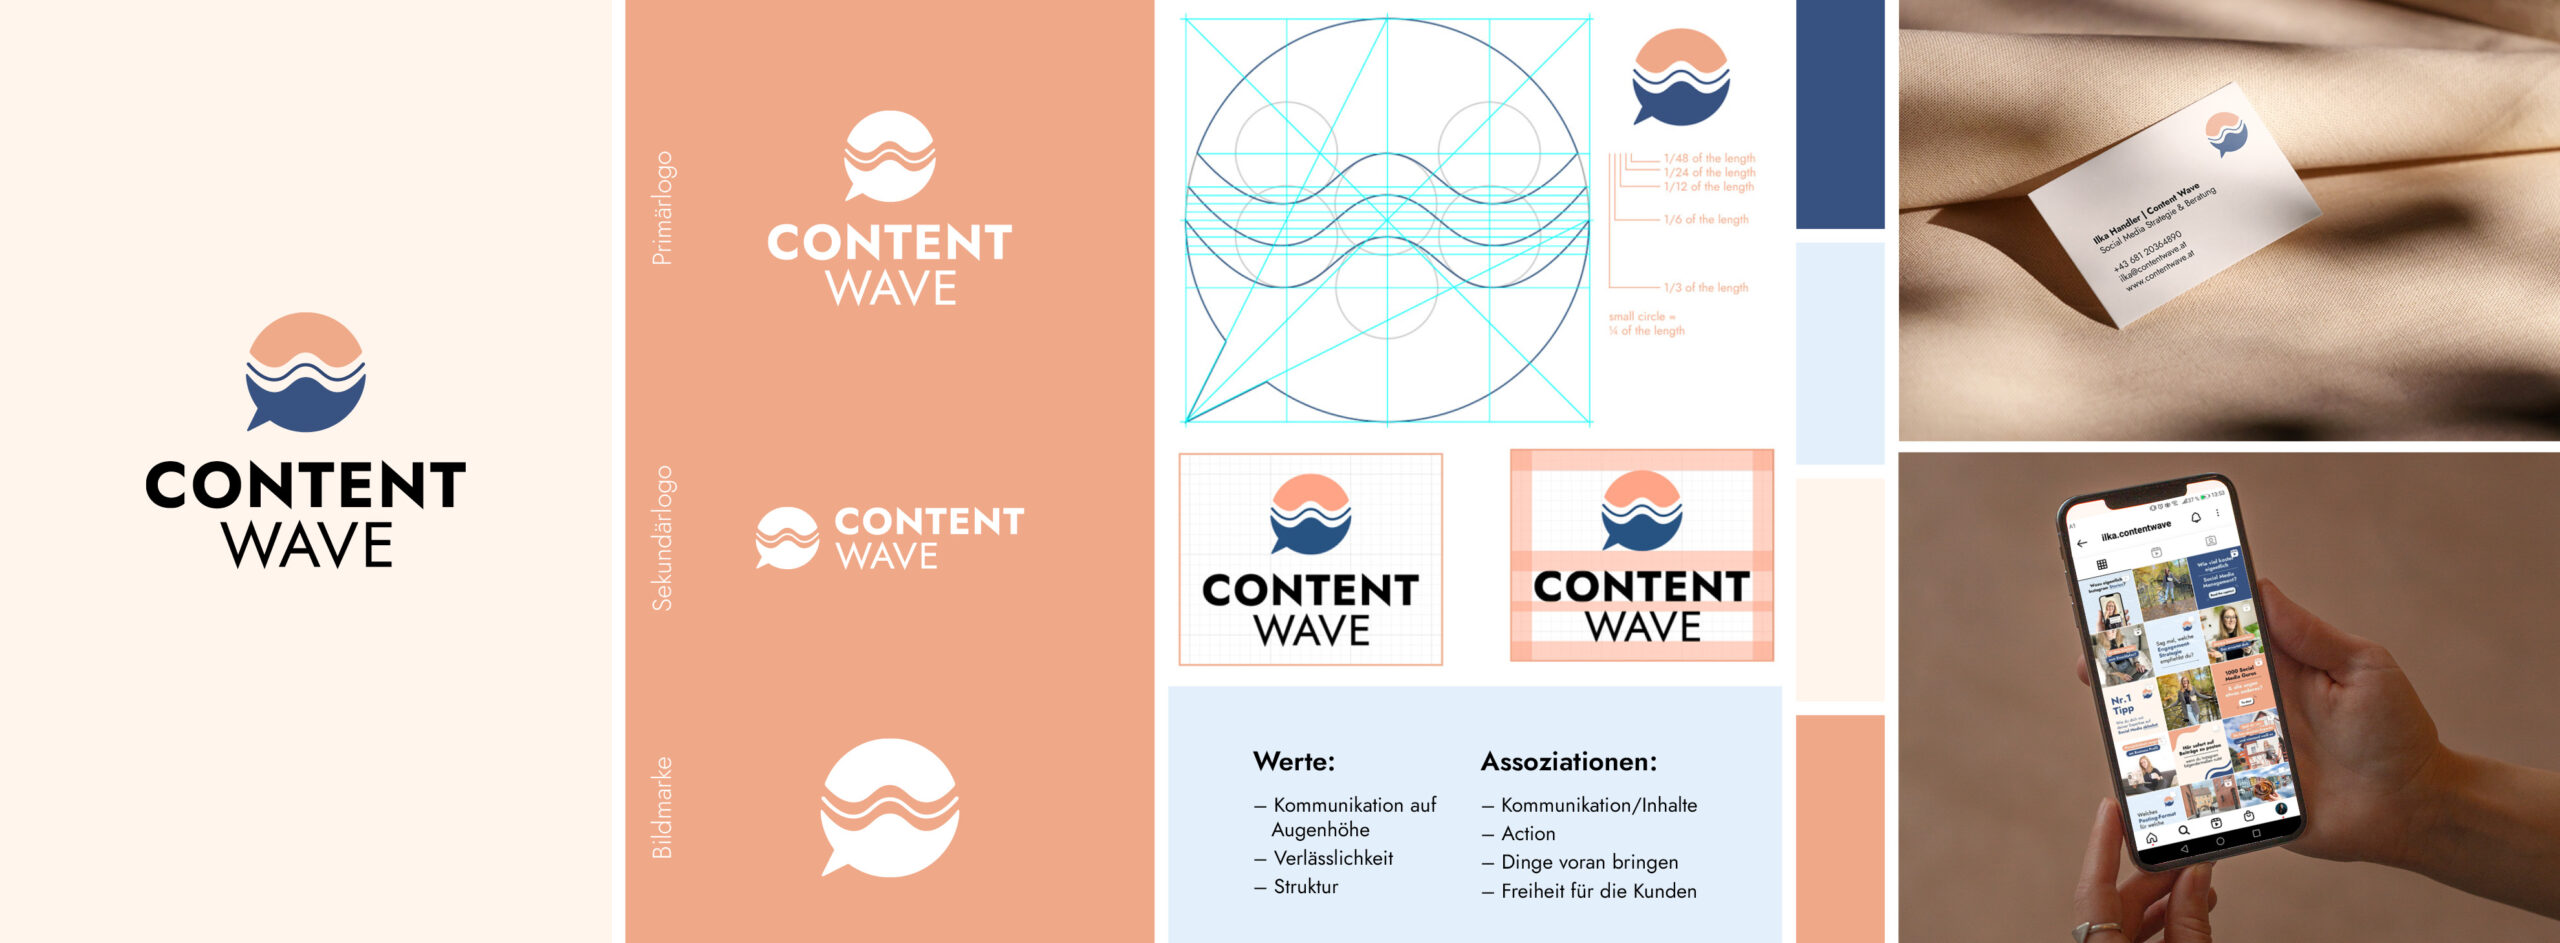 Brand Design Case Study - content wave, gezeigt wird das primäre logo, sekundäre logo und bildmarke, die werte, assoziationen und anwendungsbeispiele